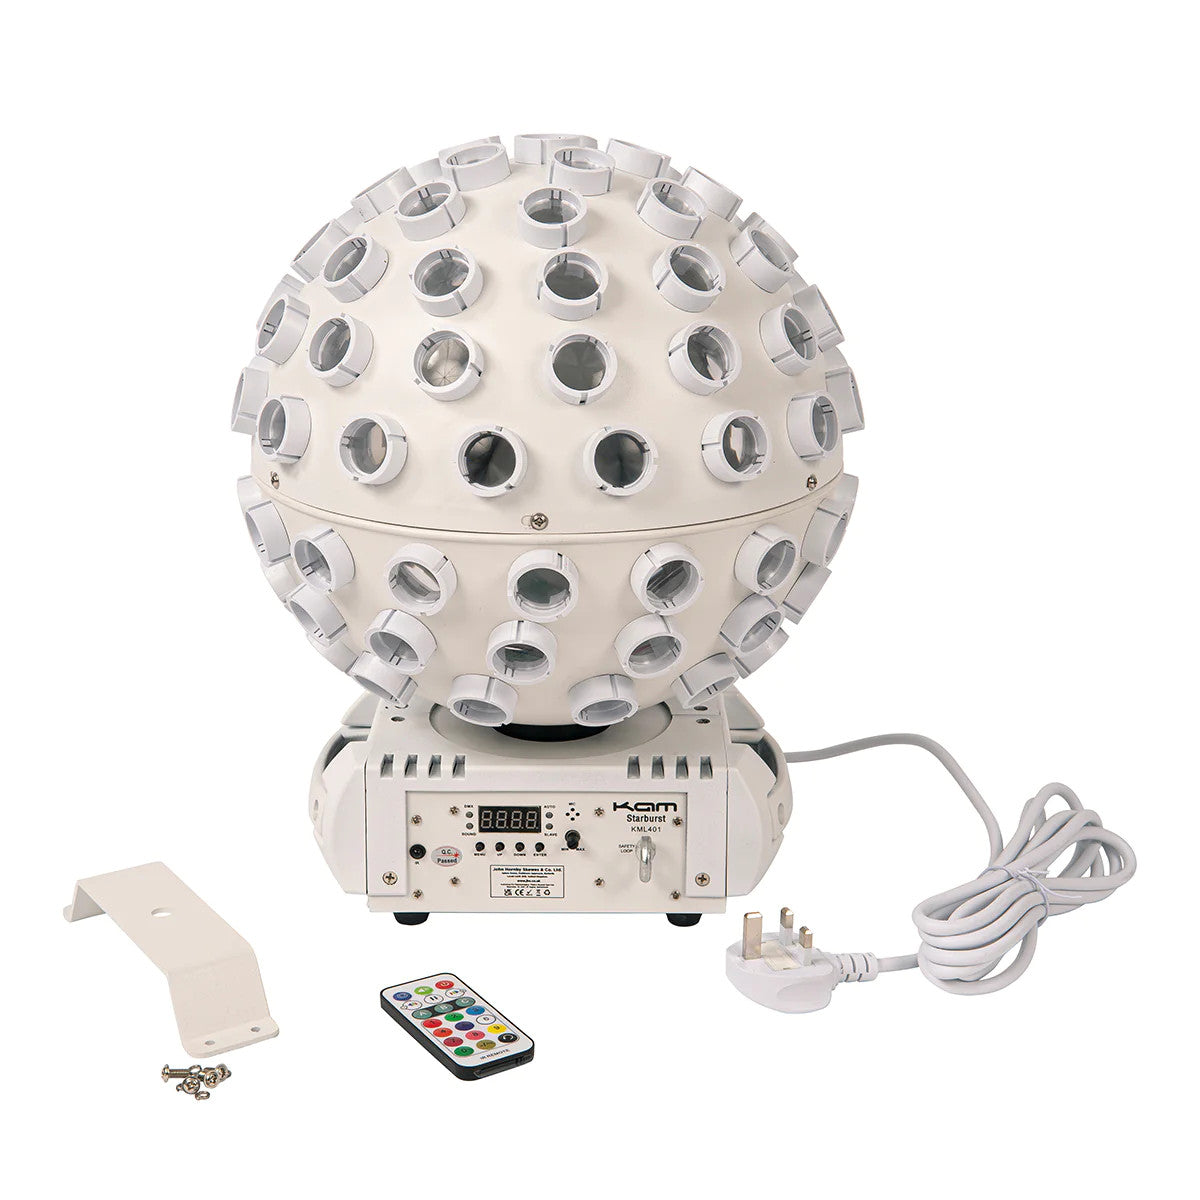 Kam Stratosphere Ghost Starburst LED Light Ball - White - maplin.co.uk